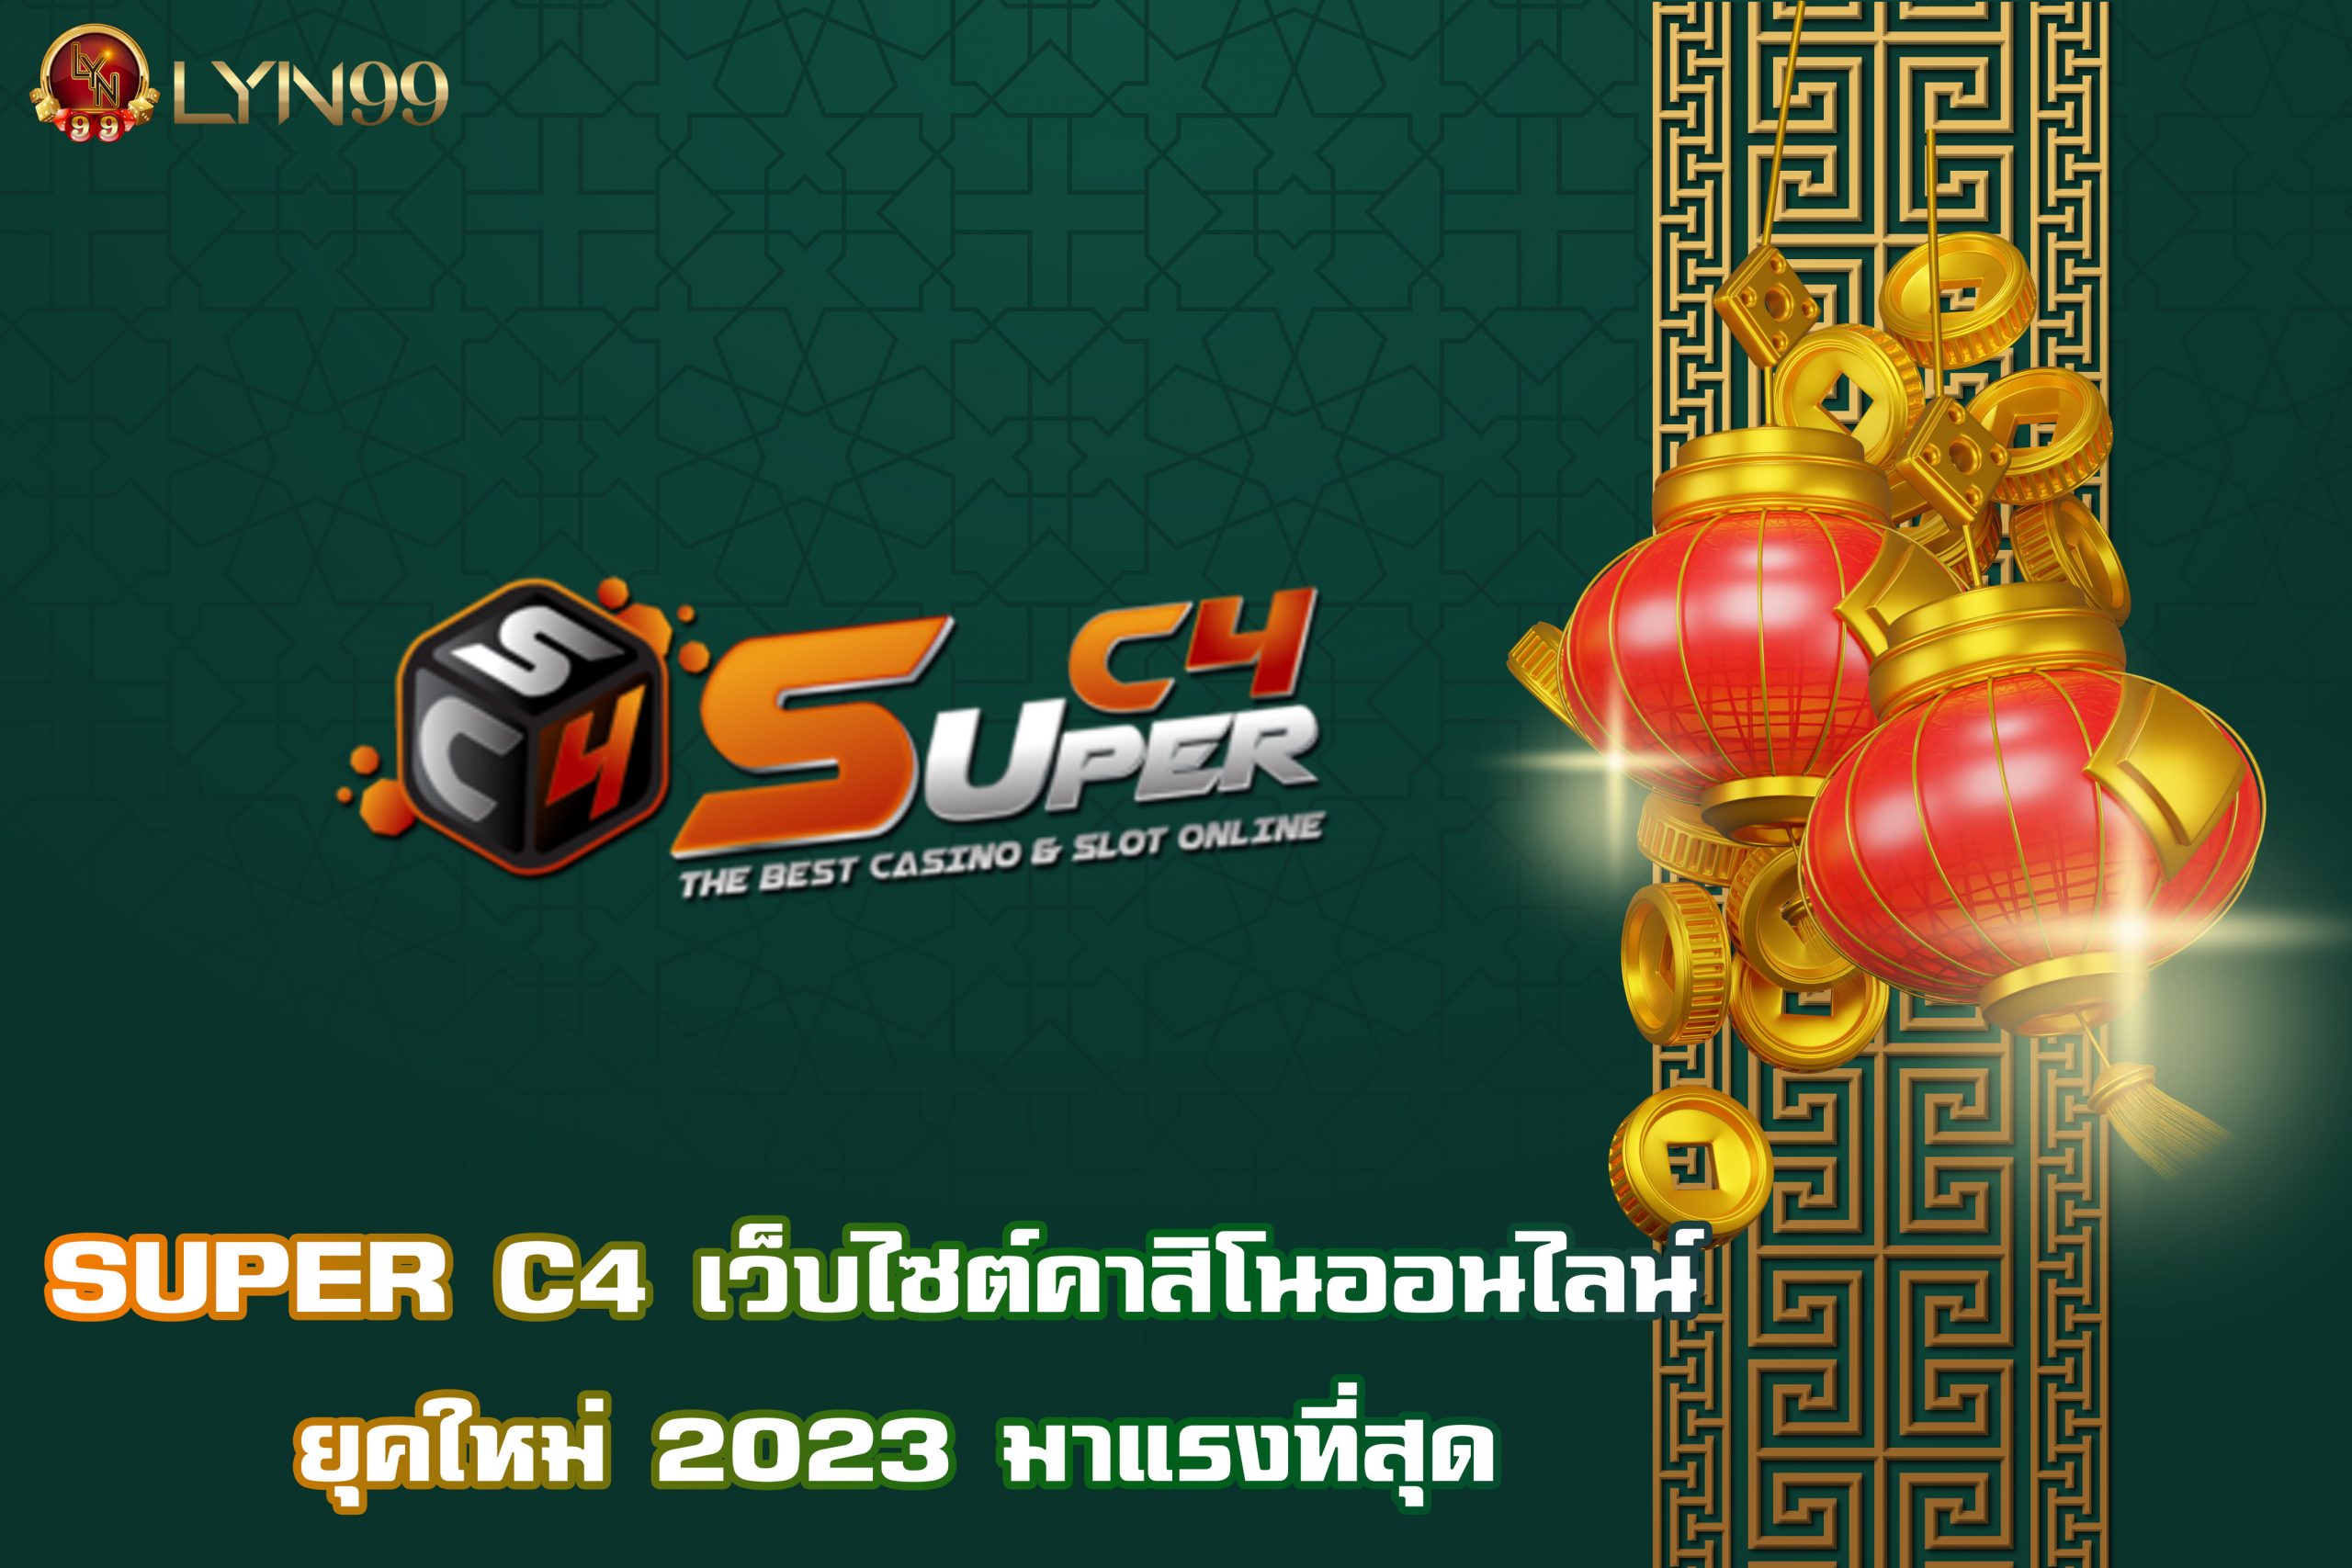 SUPER C4 เว็บไซต์คาสิโนออนไลน์ ยุคใหม่ 2023 มาแรงที่สุด